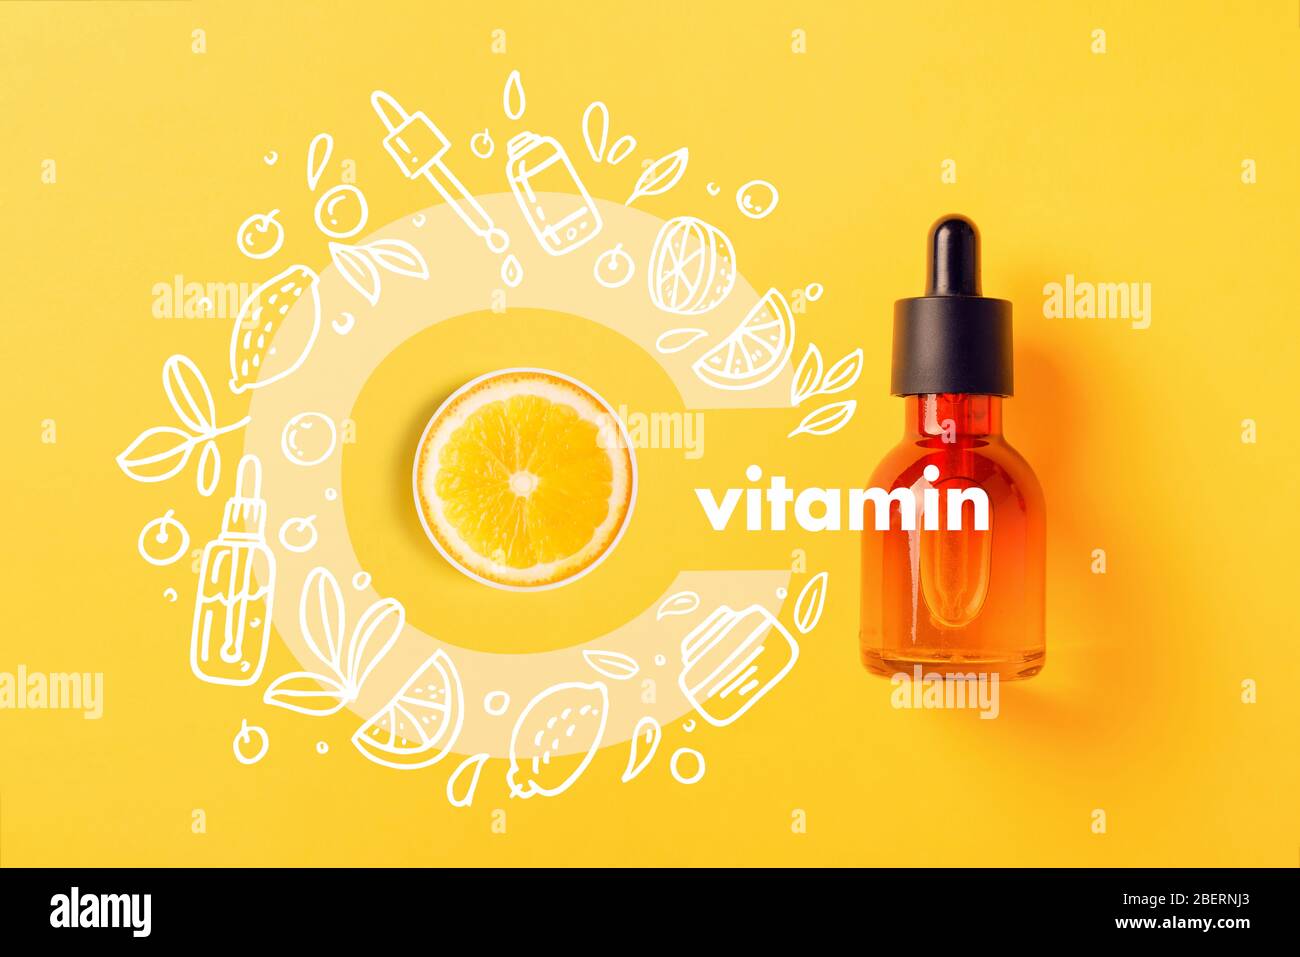 Cosmetici in bottiglia di vetro, sieri e oli con vitamina C su sfondo giallo immagine con icone in stile Doodle immagine bio cosmetica organica concetto di prote Foto Stock